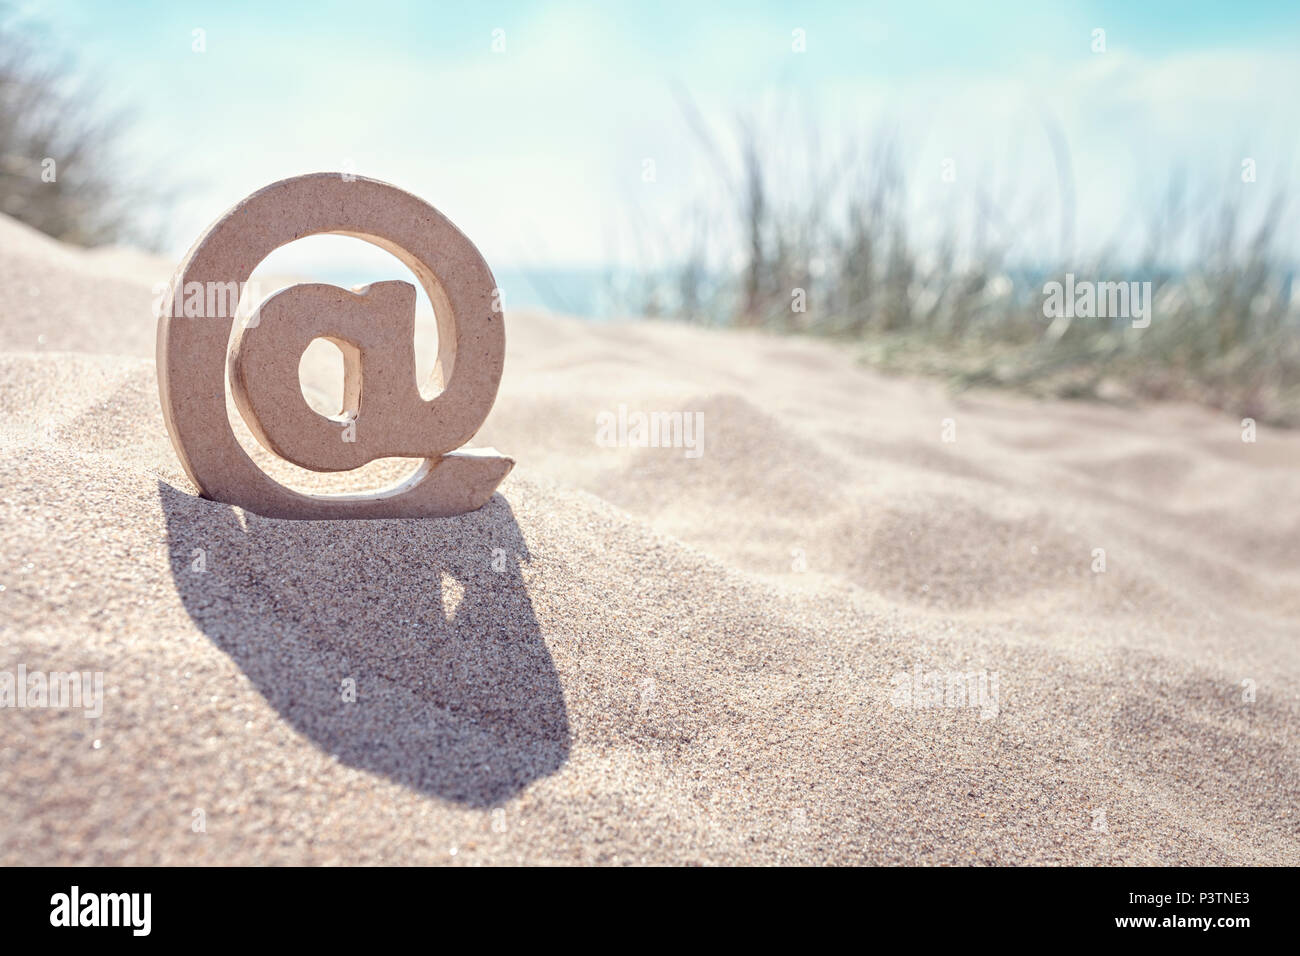 Email @ symbole dans le sable à la plage Banque D'Images